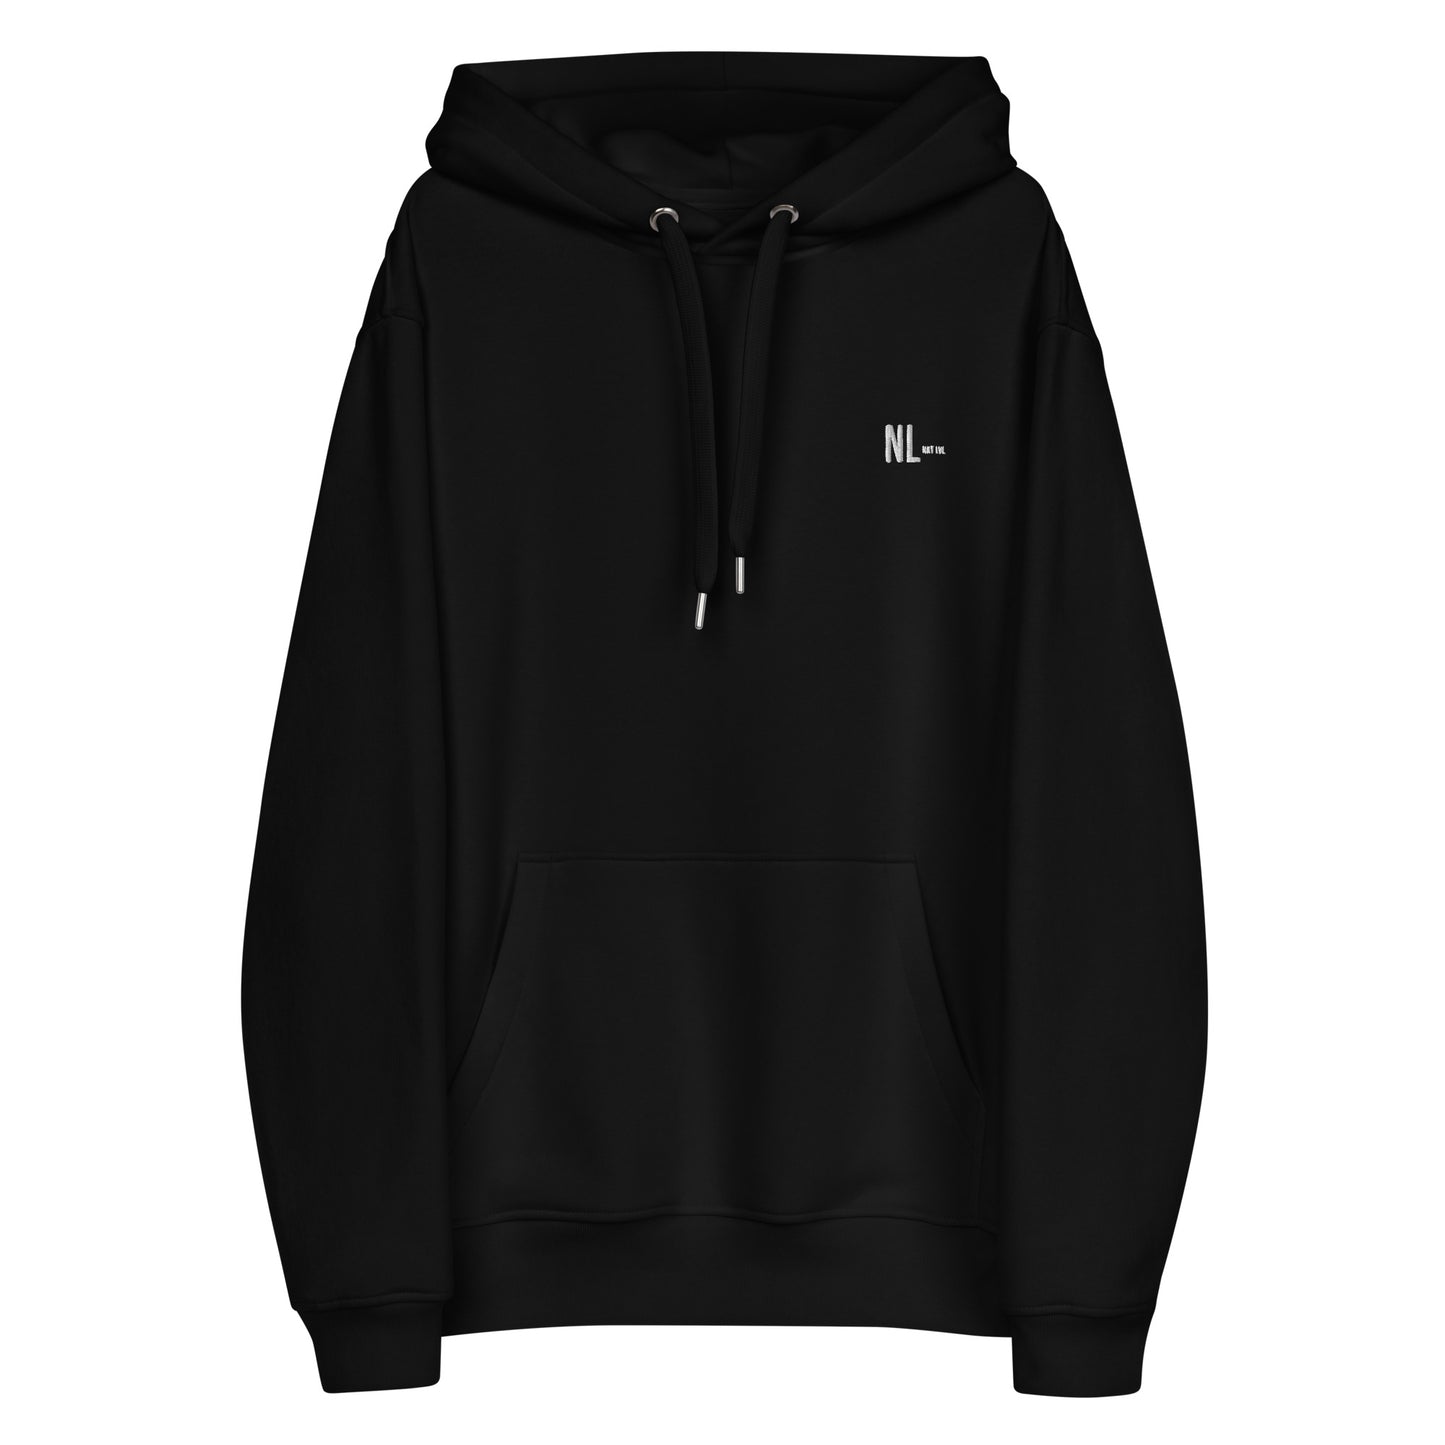 Next Level Premium eco hoodie